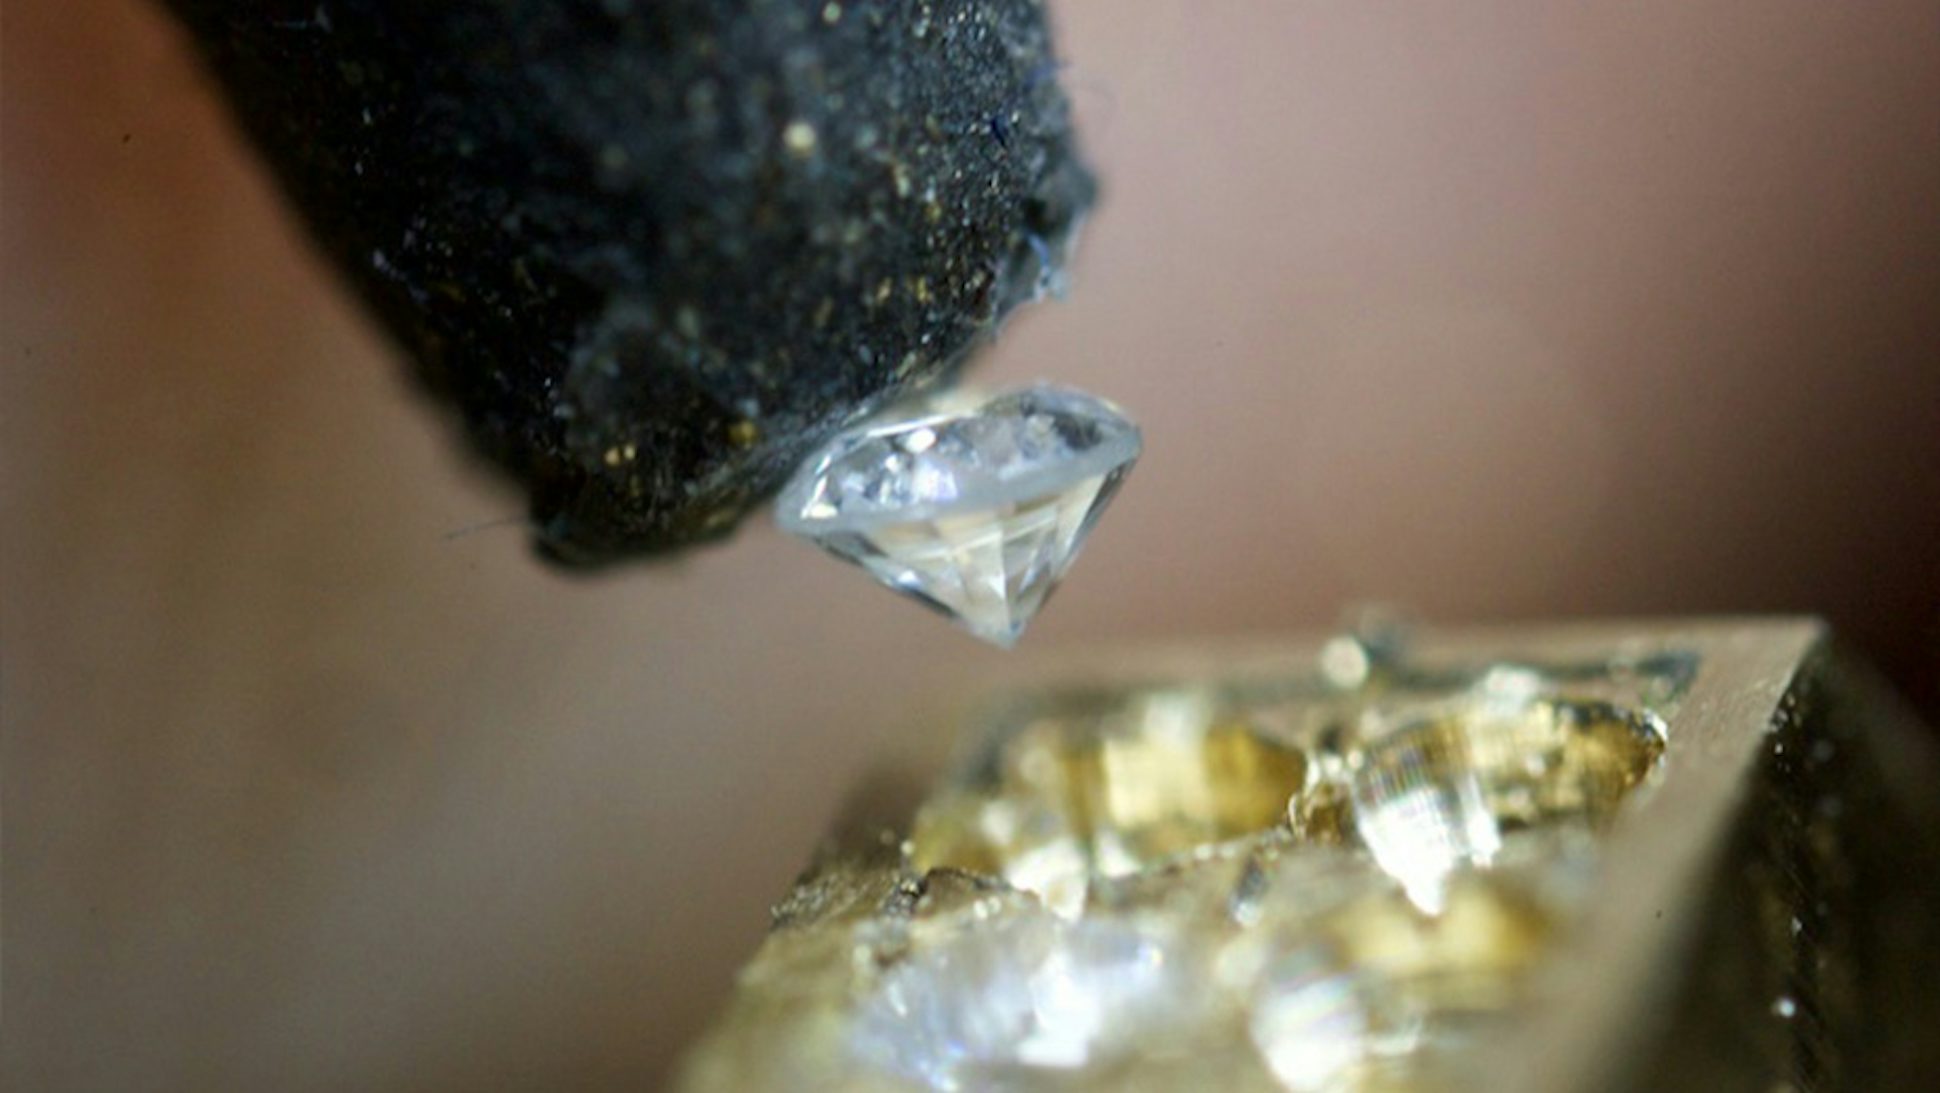 The lab-grown diamond